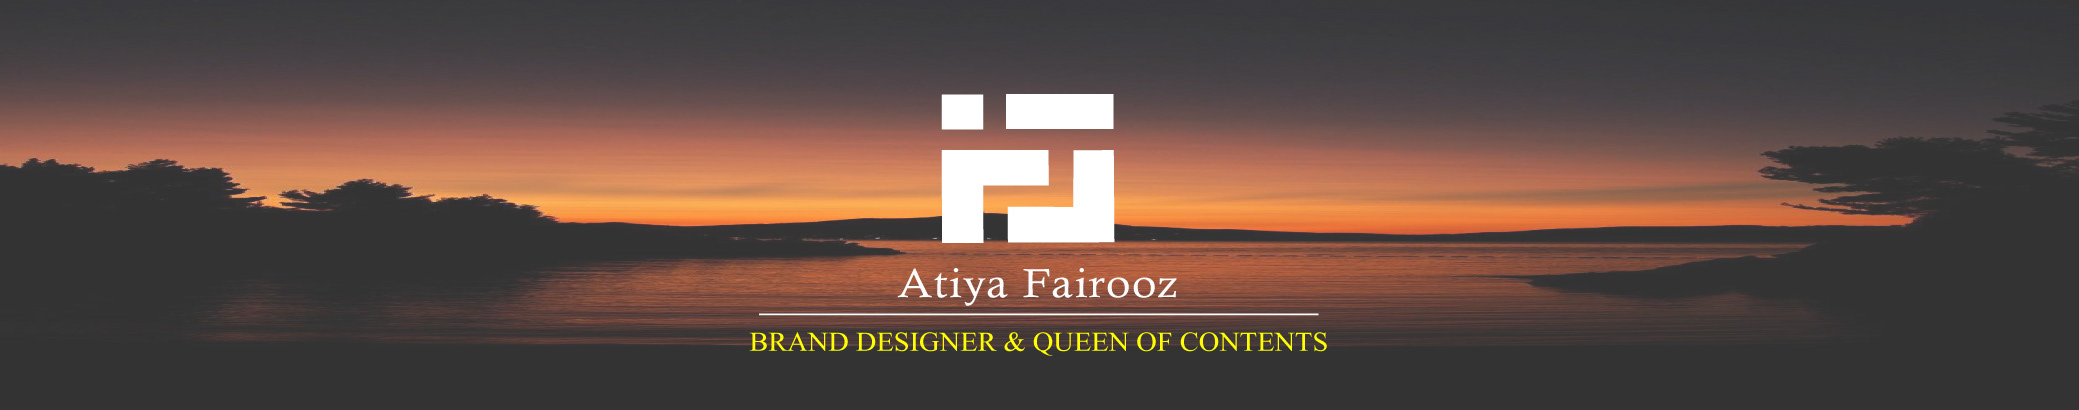 Atiya Fairooz profil başlığı